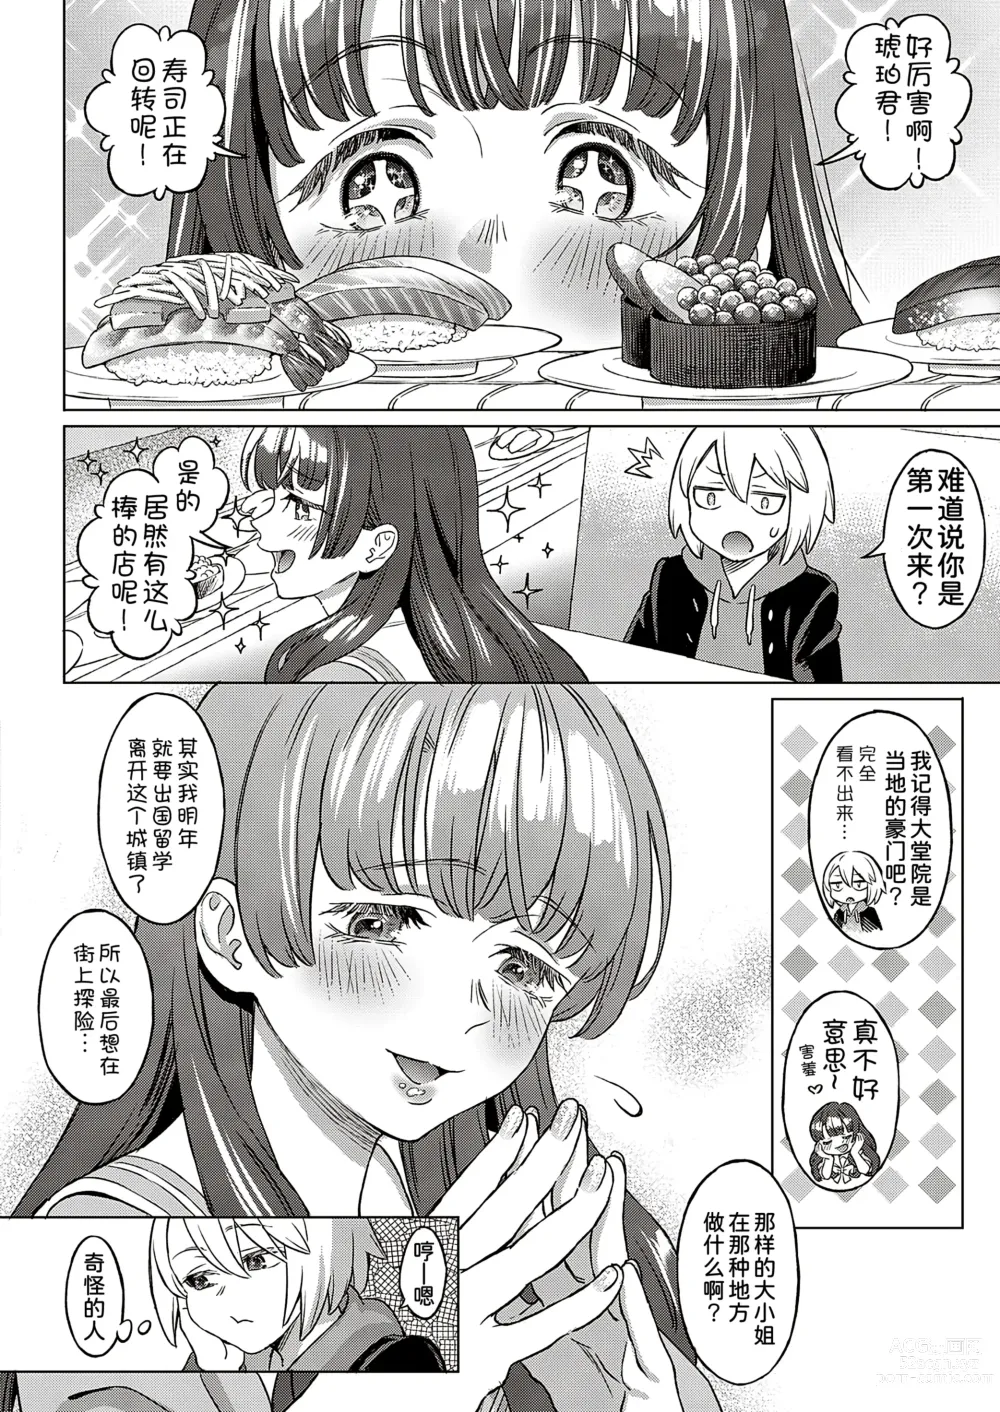 Page 5 of manga Kohakuiro no Machi, Sakura ga Ita Kisetsu